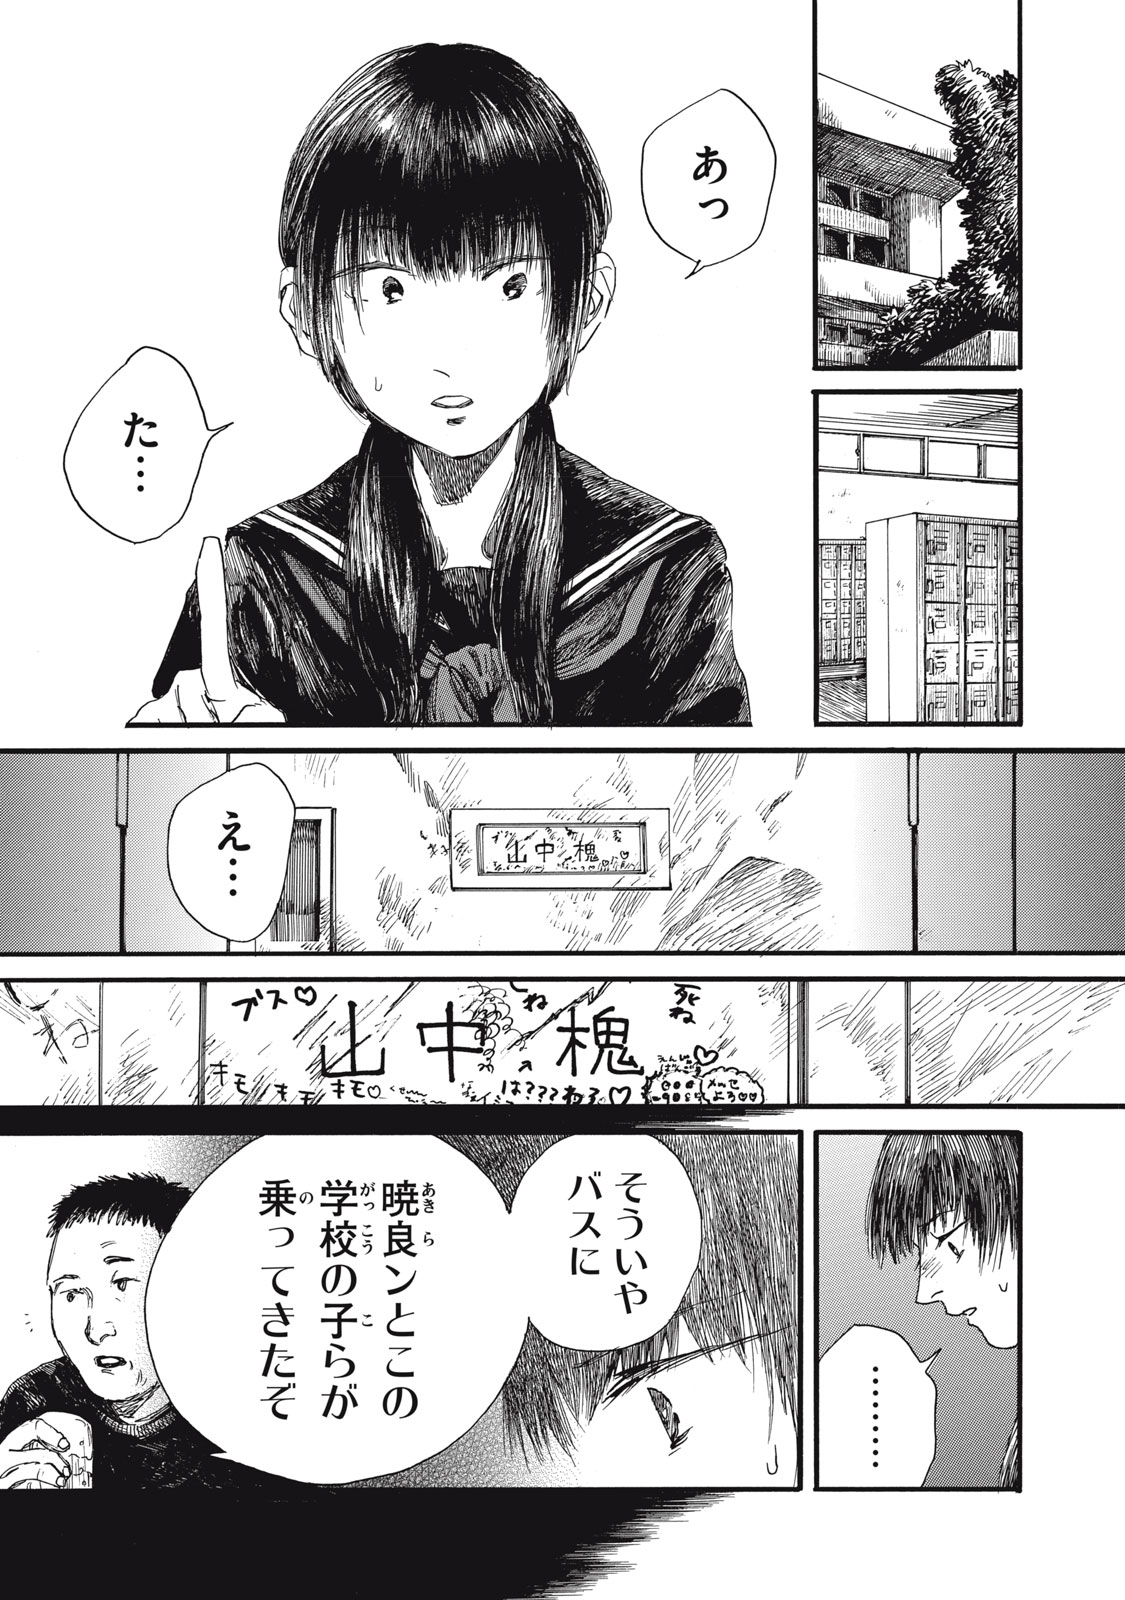 Watashi no Hara no Naka no Bakemono - Chapter 31 - Page 1